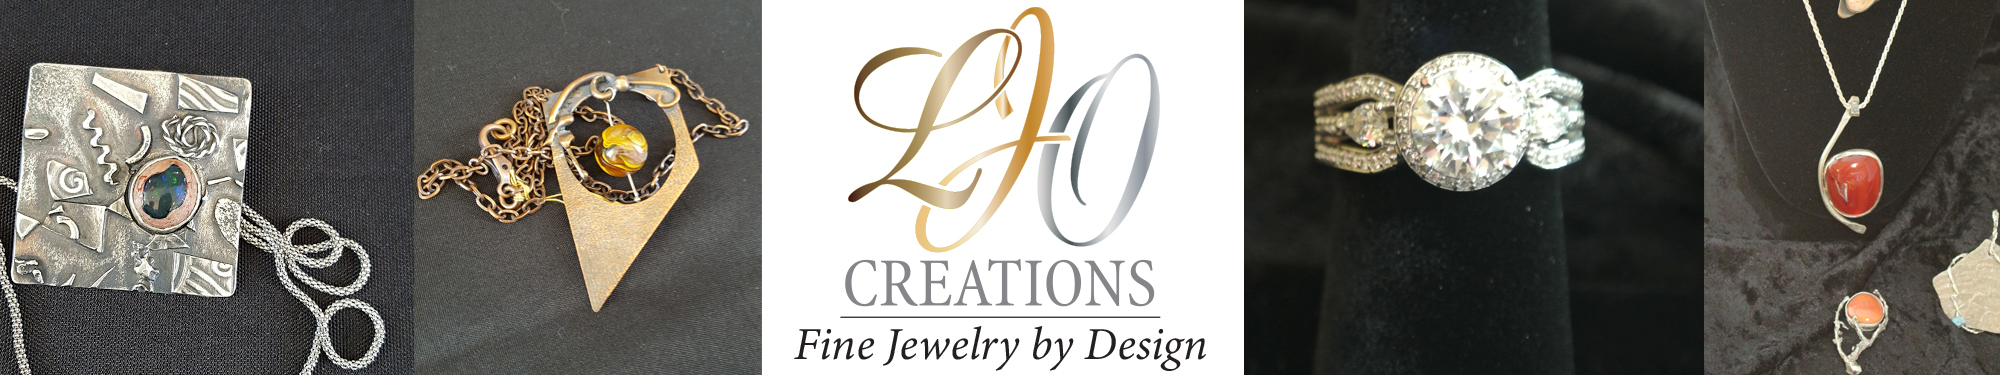 LJO Jewelry by Design